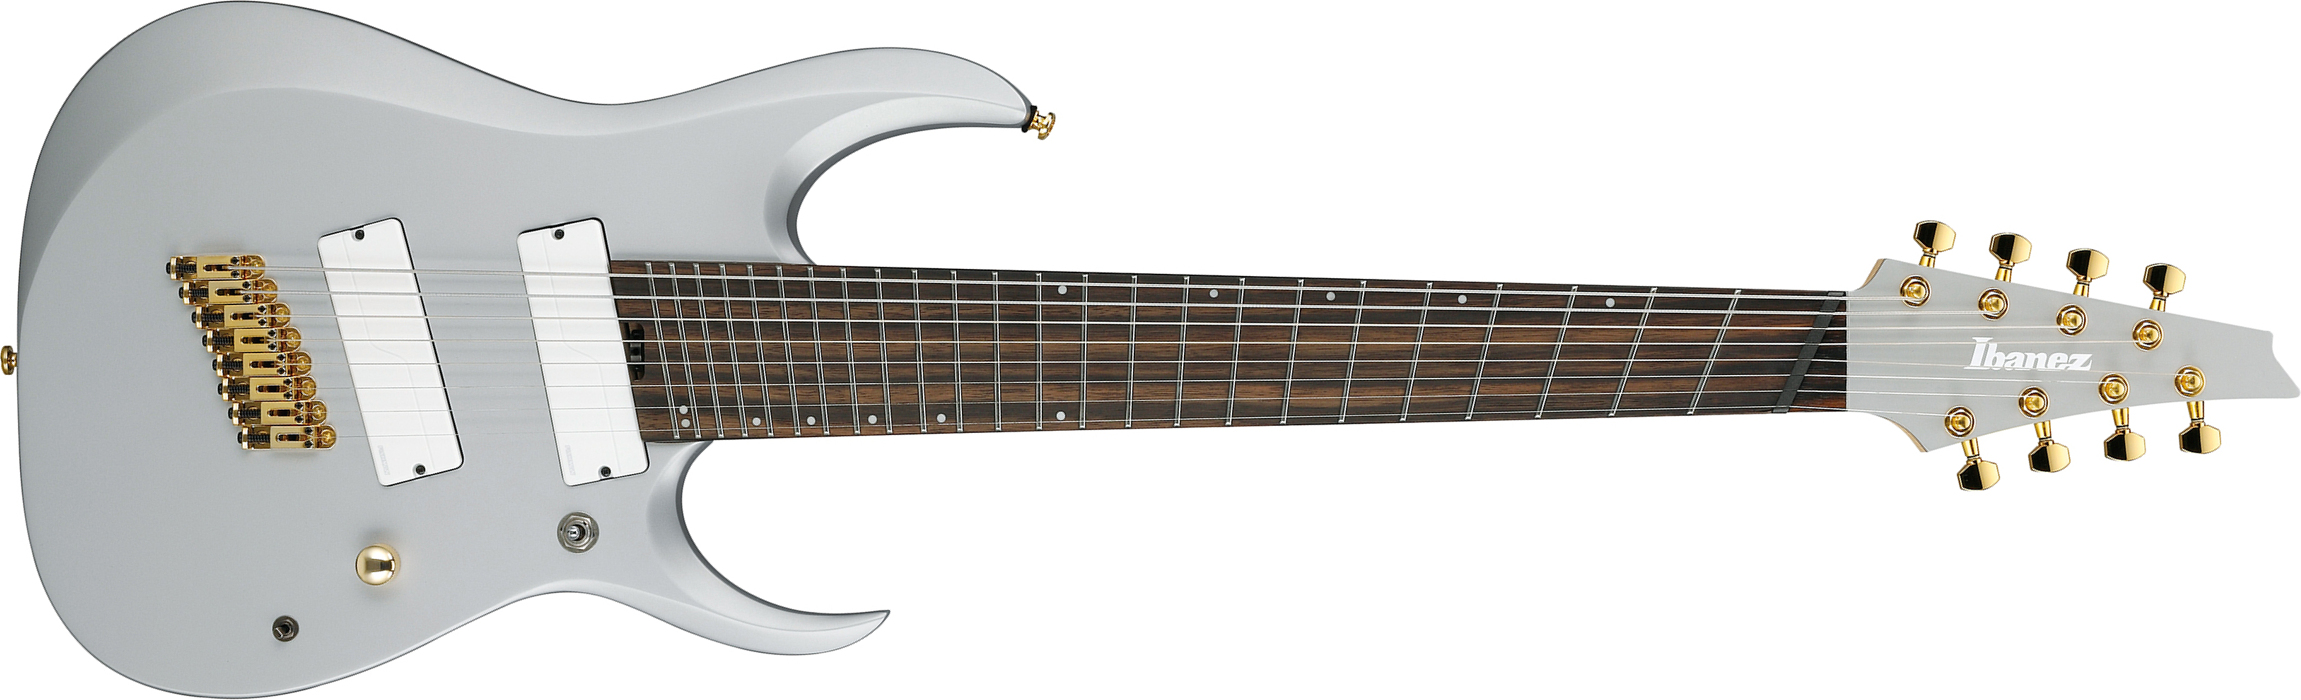 Ibanez Rgdms8 Csm Axe Design Lab 8c Multiscale 2h Fishman Fluence Modern Ht Eb - Classic Silver Matte - Guitare Électrique 8 Et 9 Cordes - Main pictur